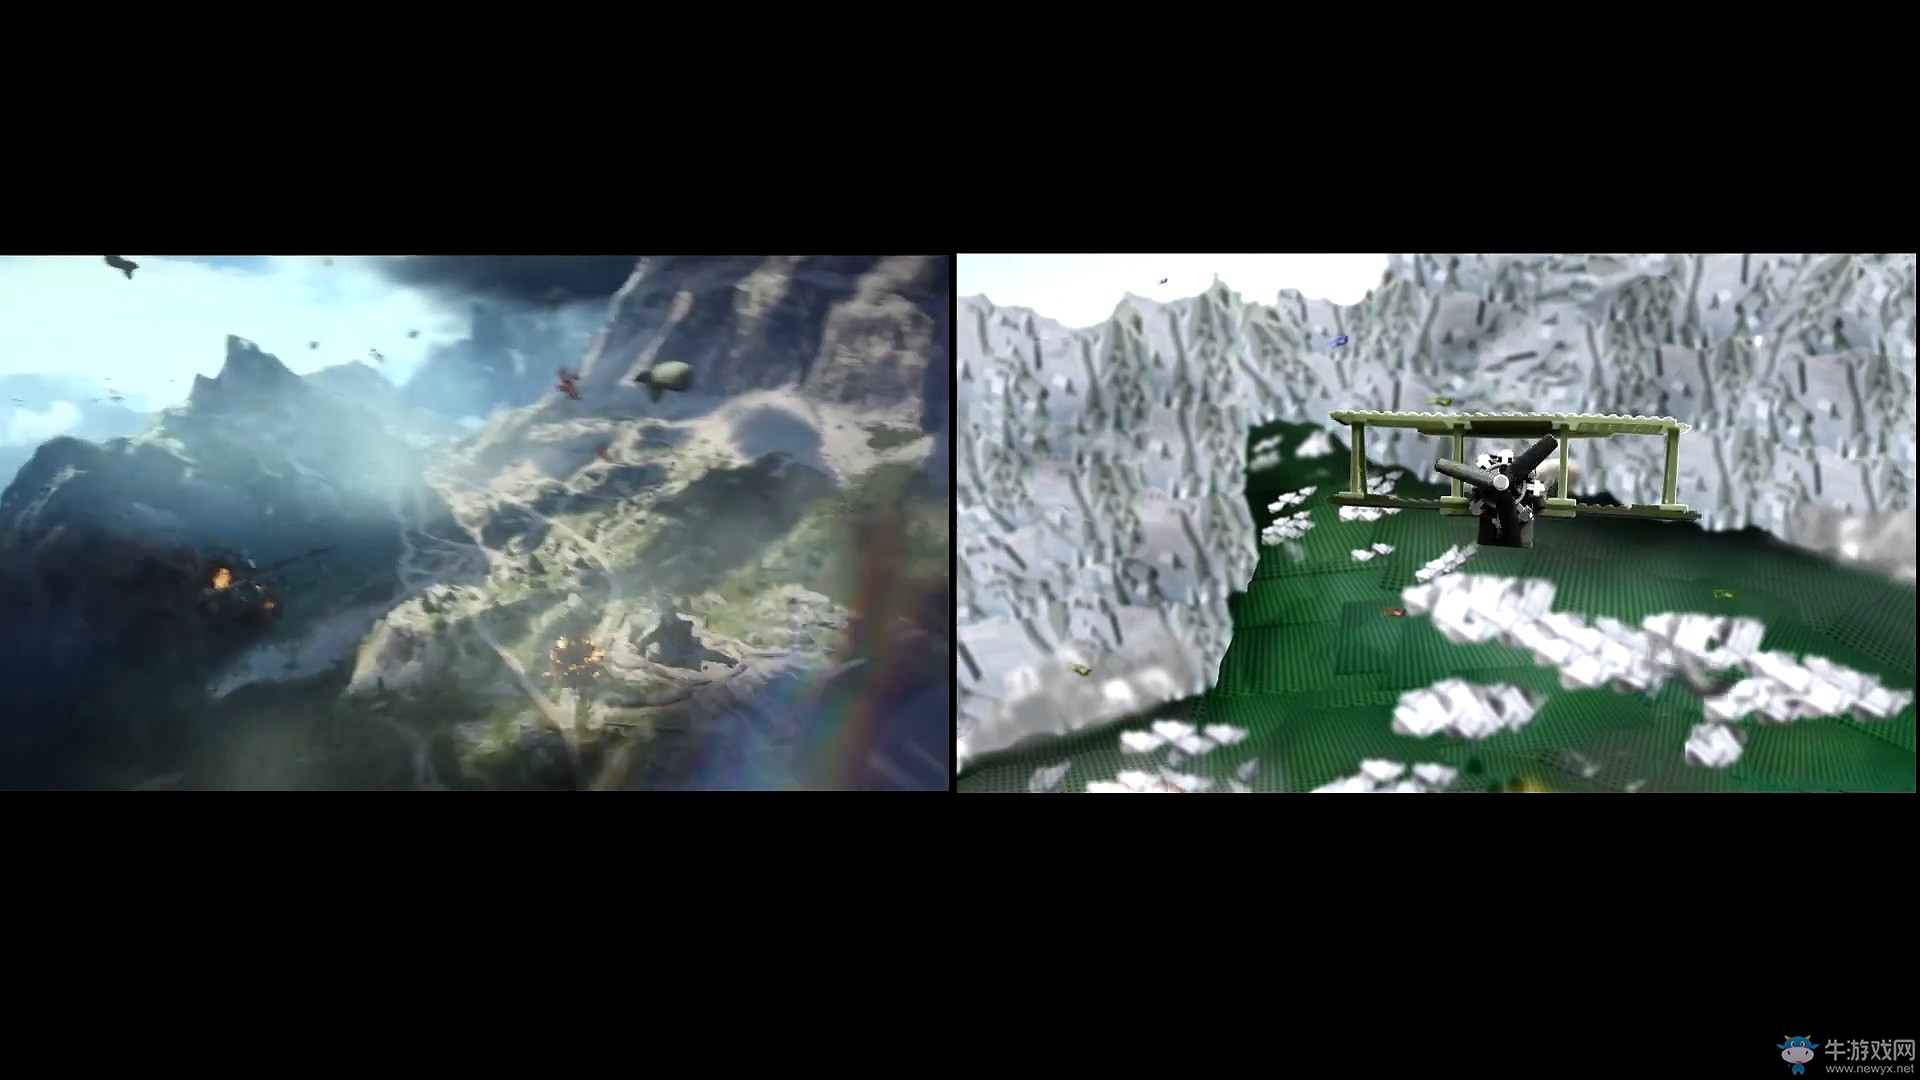 《战地1》预告片 原版 VS 乐高版 会是怎样的差异呢